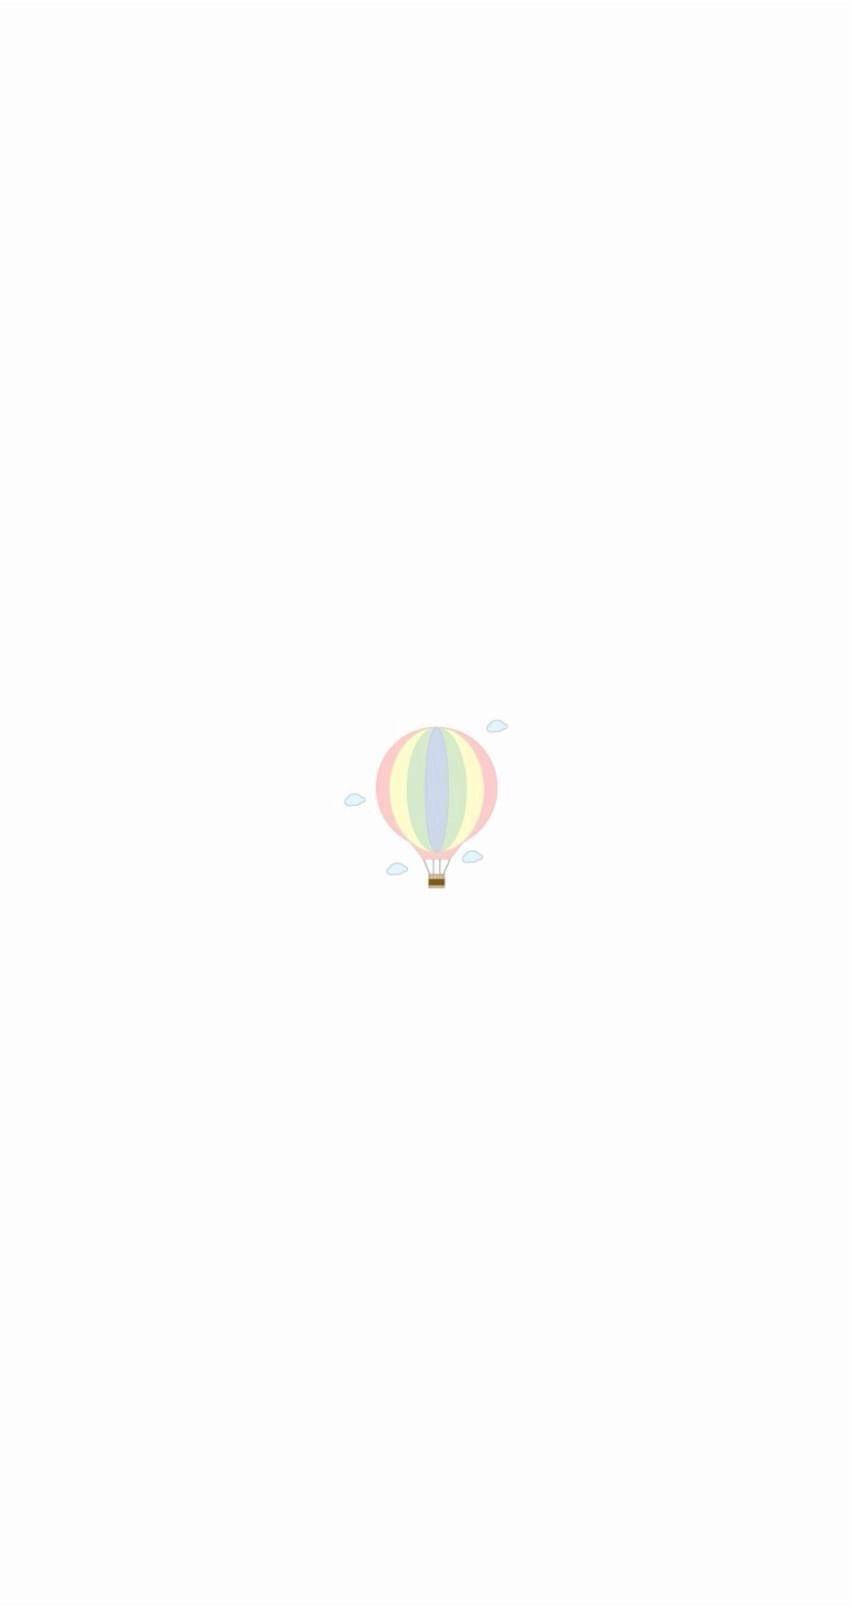 Pastel Iphone Hot Air Balloon Art Wallpaper